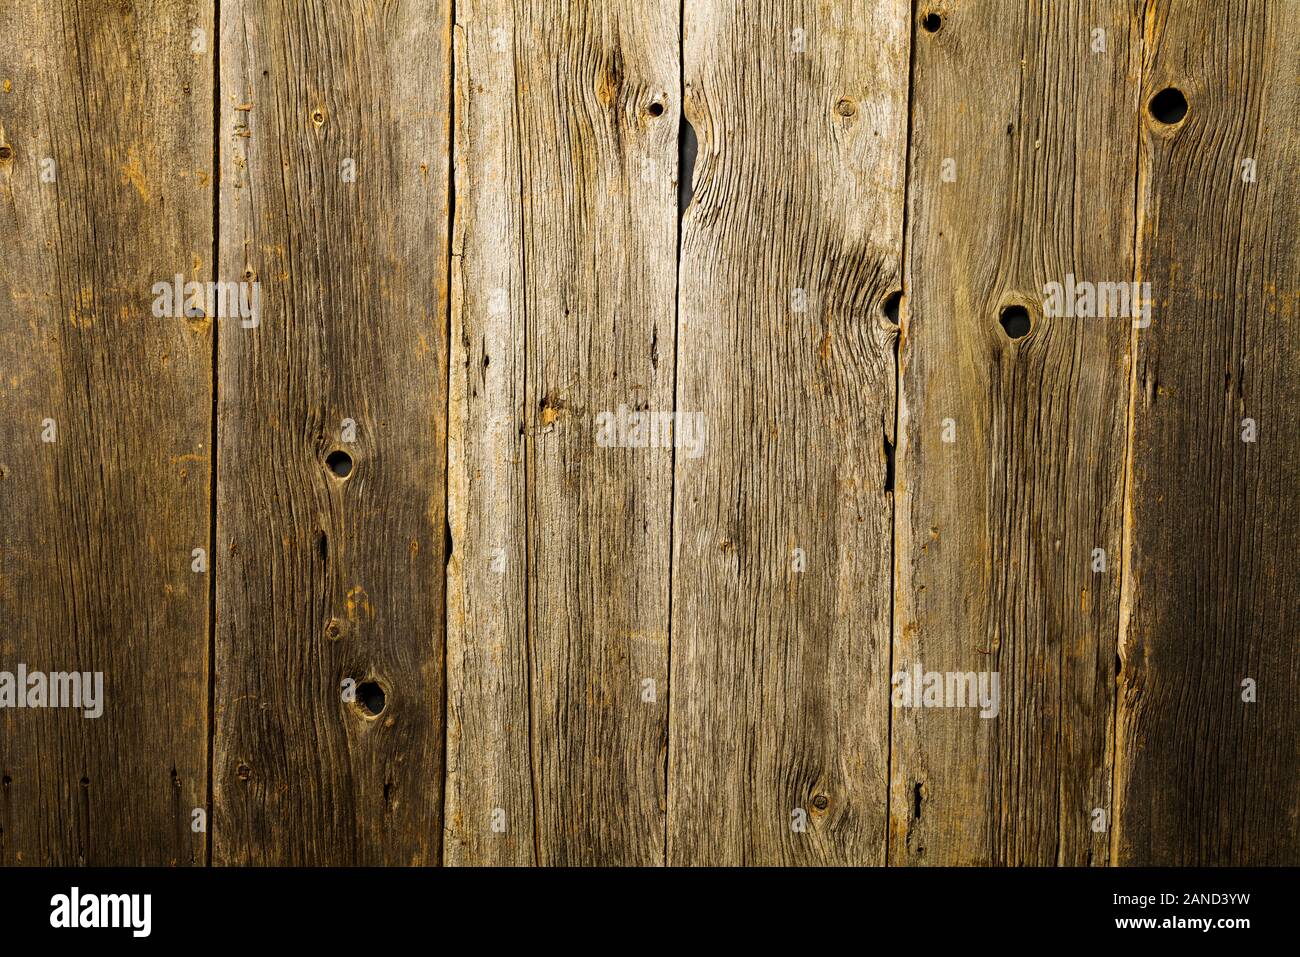 Close-up von texturierten & verwitterten Scheune Holz Abstellgleis Stockfoto